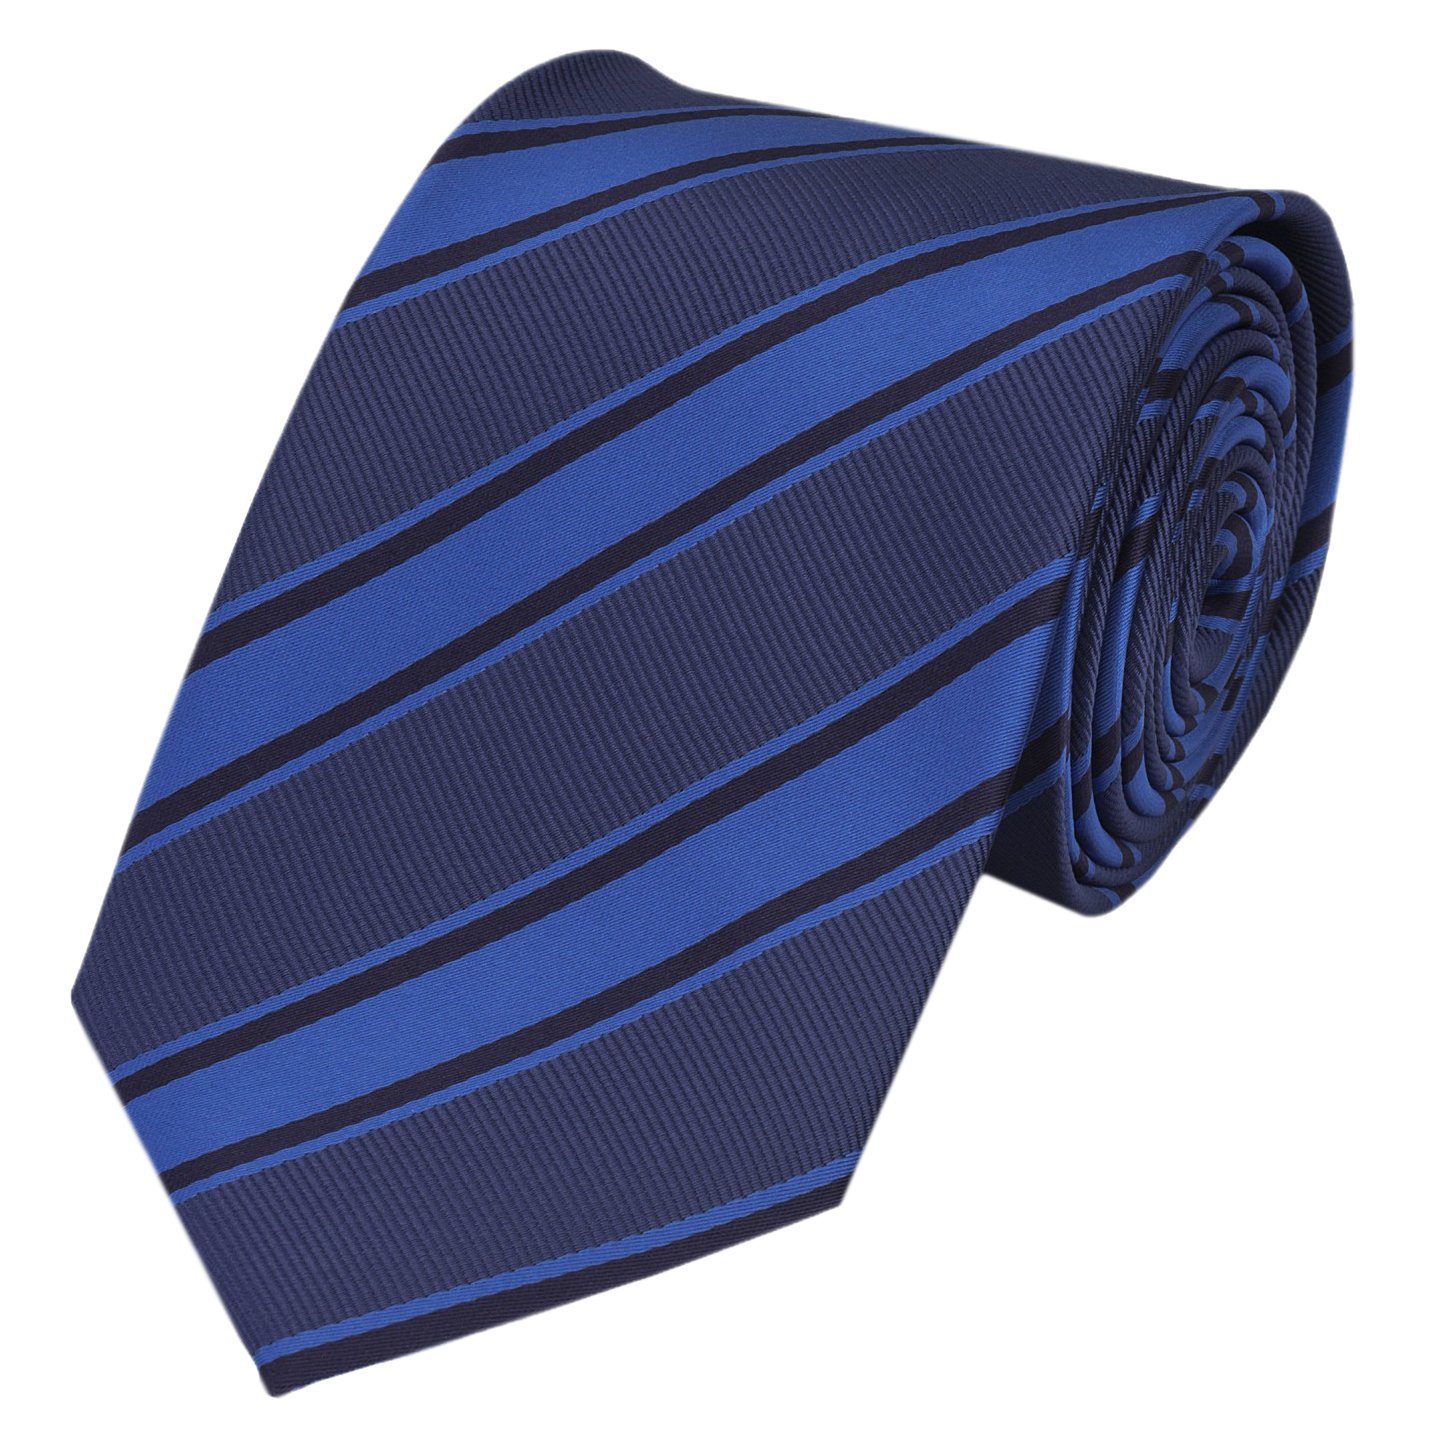 Fabio Farini Krawatte gestreifte Herren Krawatte - Tie mit Streifen in 6cm oder 8cm Breite (ohne Box, Gestreift) Breit (8cm), Nachtblau/Royalblau/Schwarz